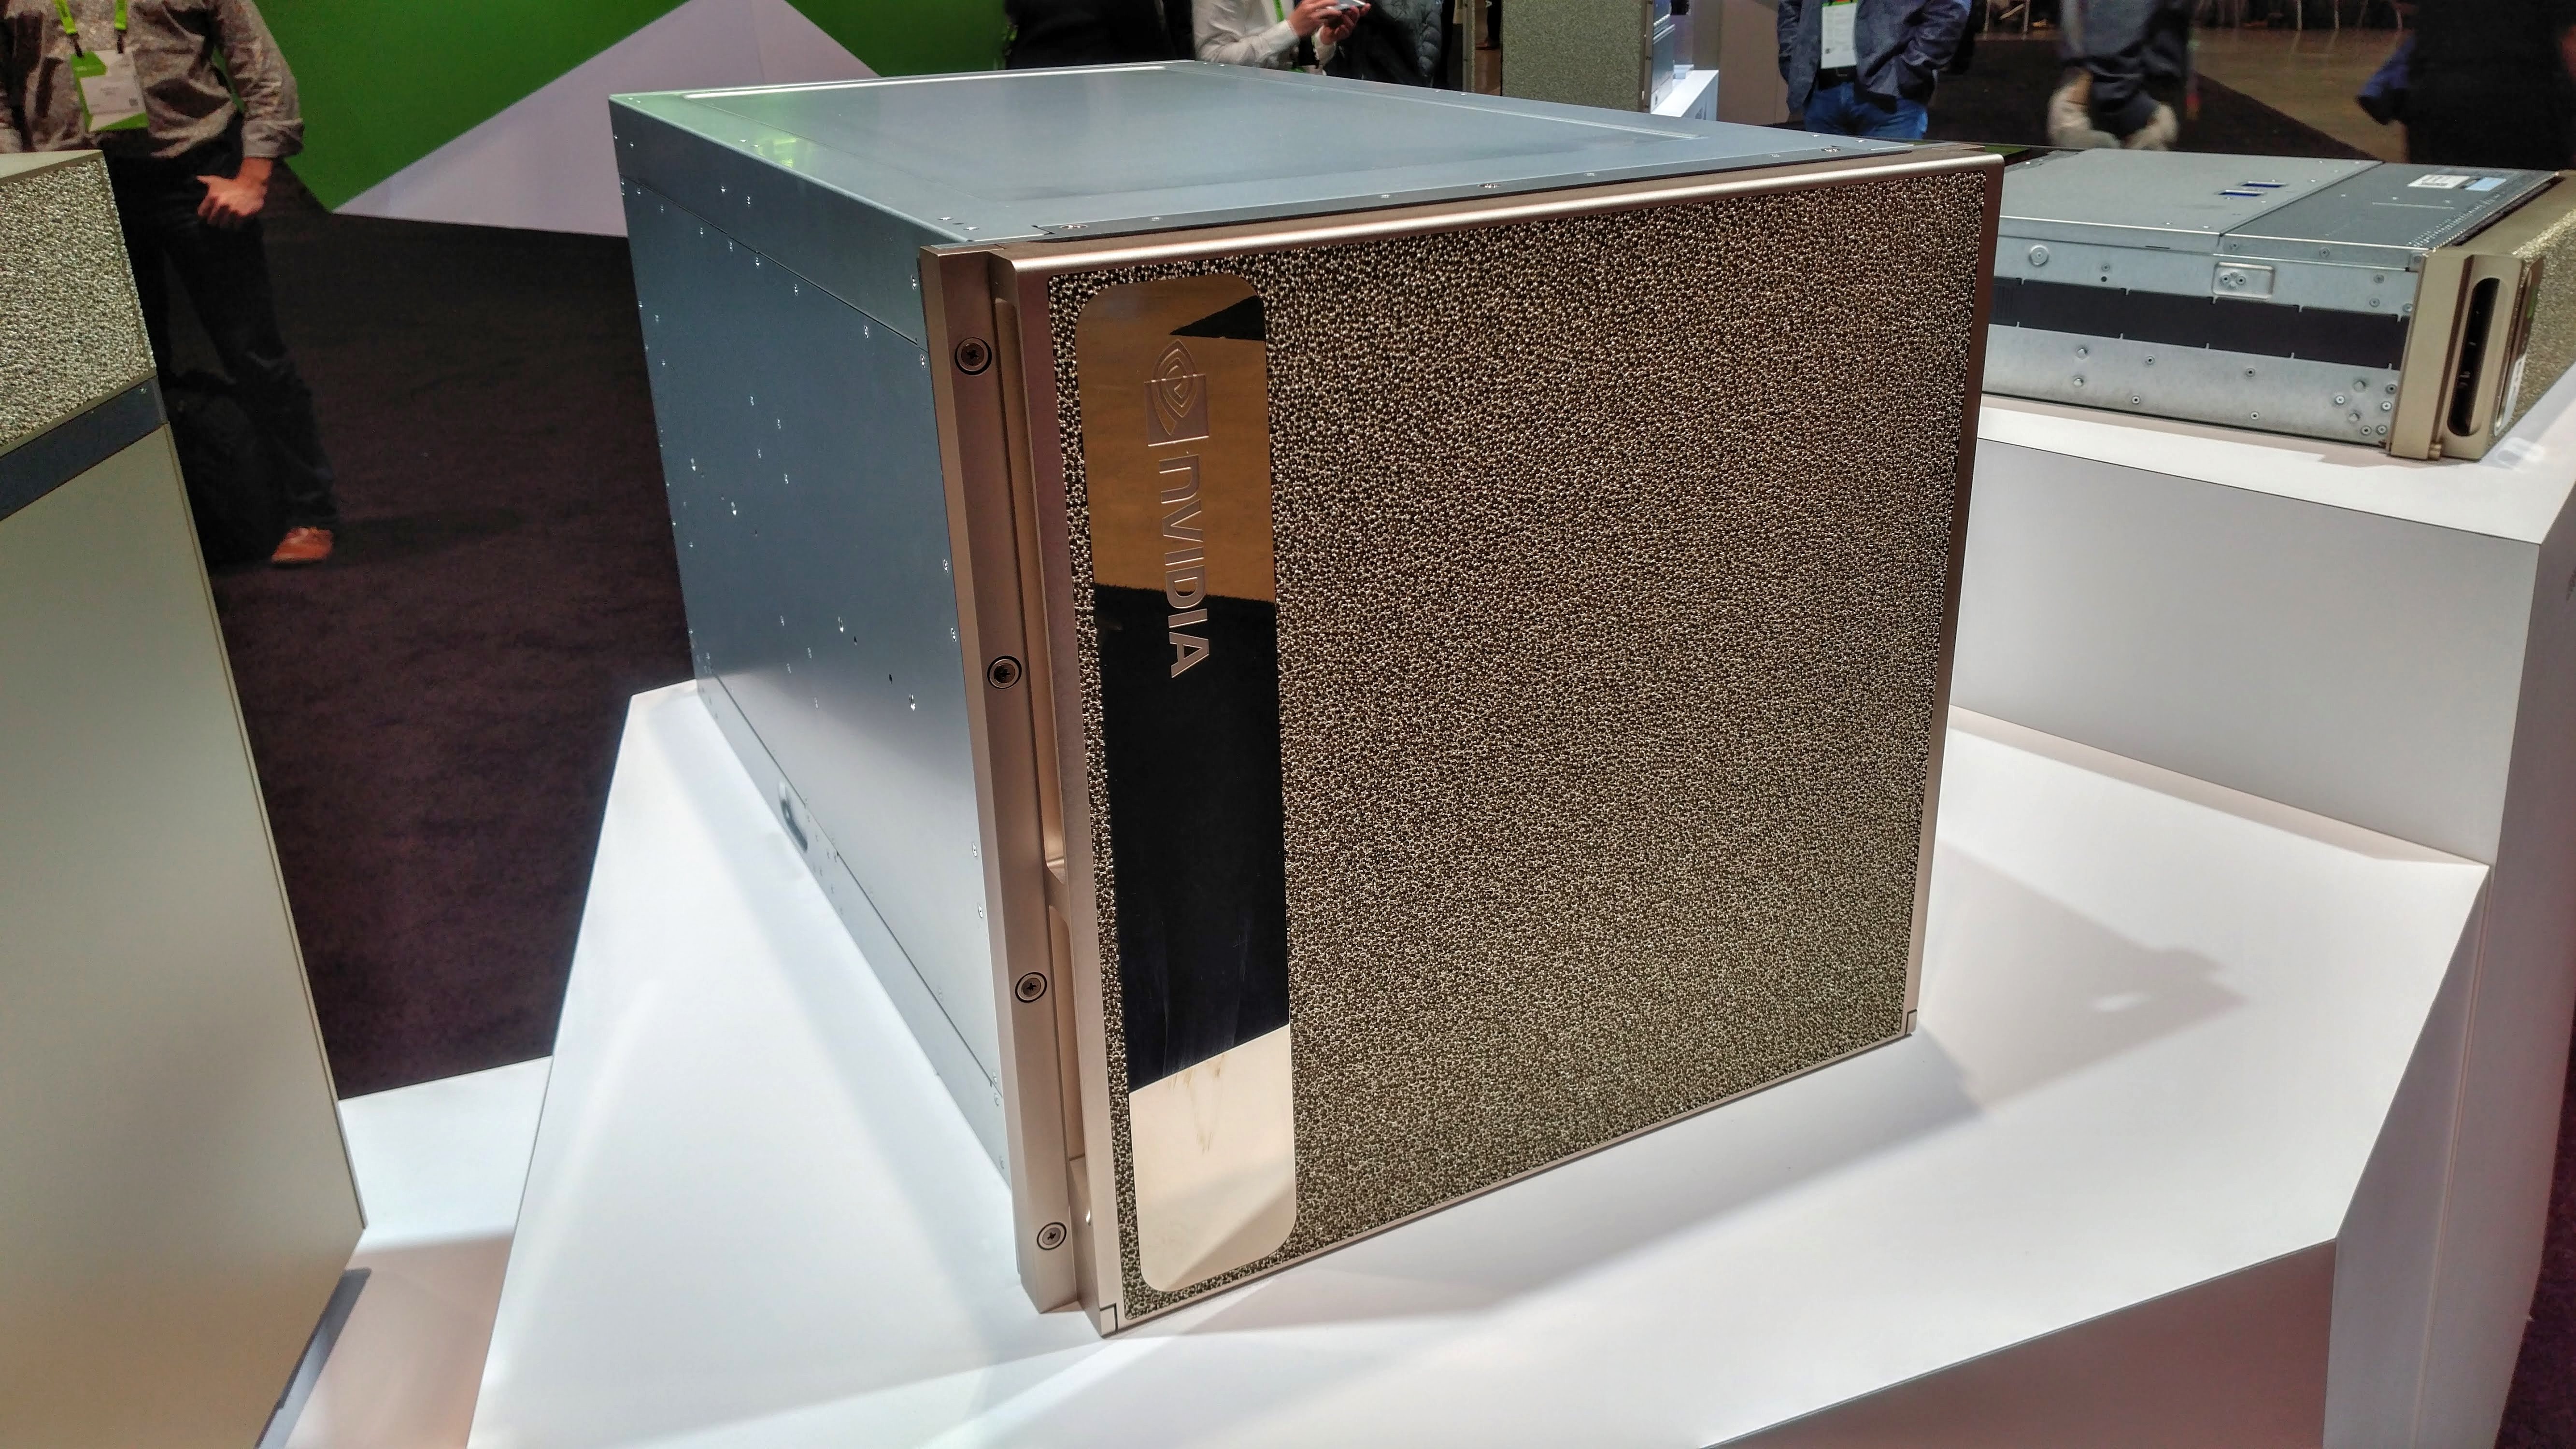 Nvidia's DGX-2 supercomputer on display at GTC 2018